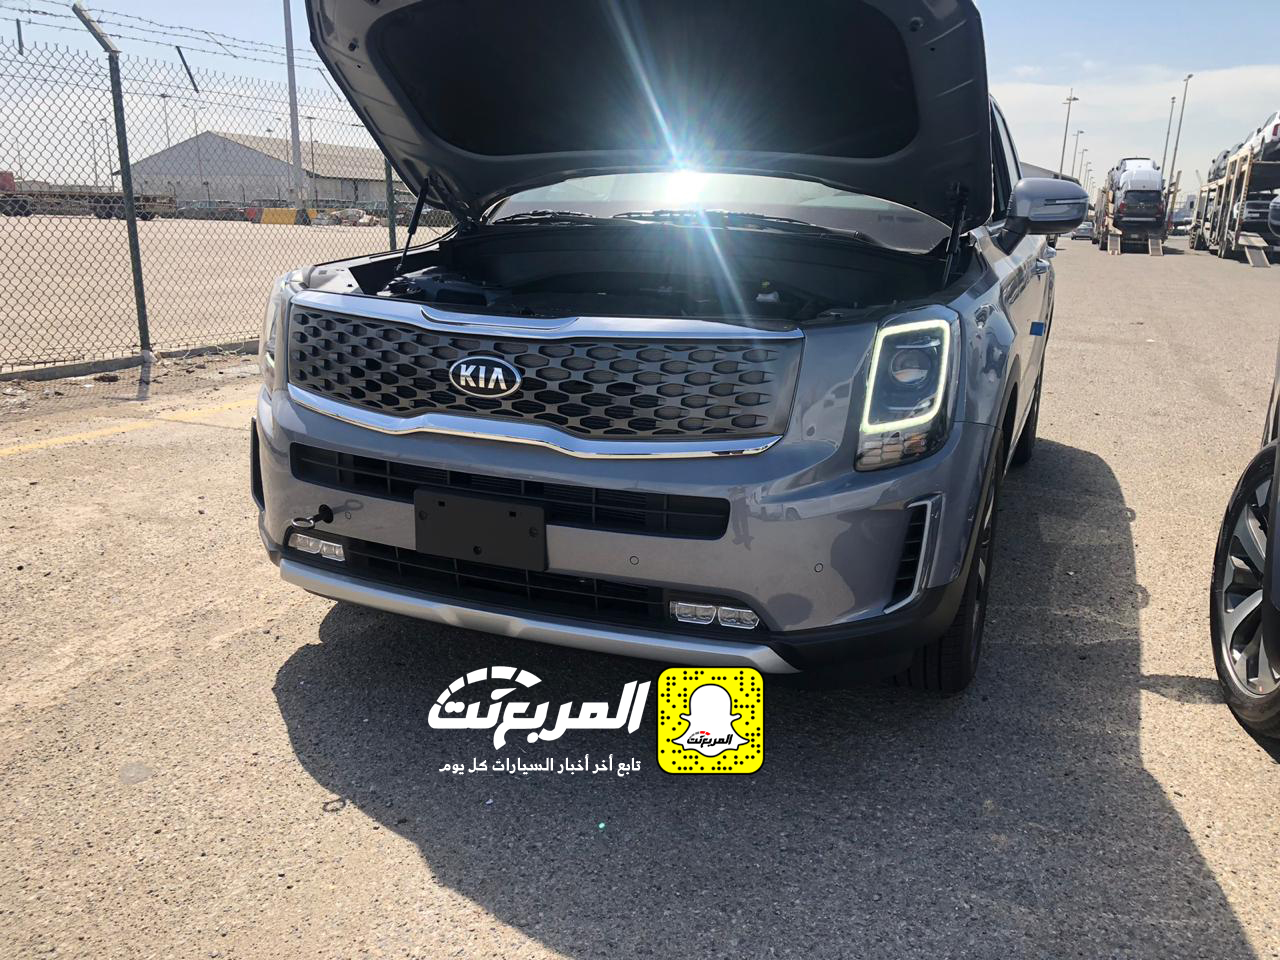 "بالصور" وصول كيا تيلورايد 2020 الجديدة الى السعودية اكبر SUV من كيا + موعد البيع الرسمي 8